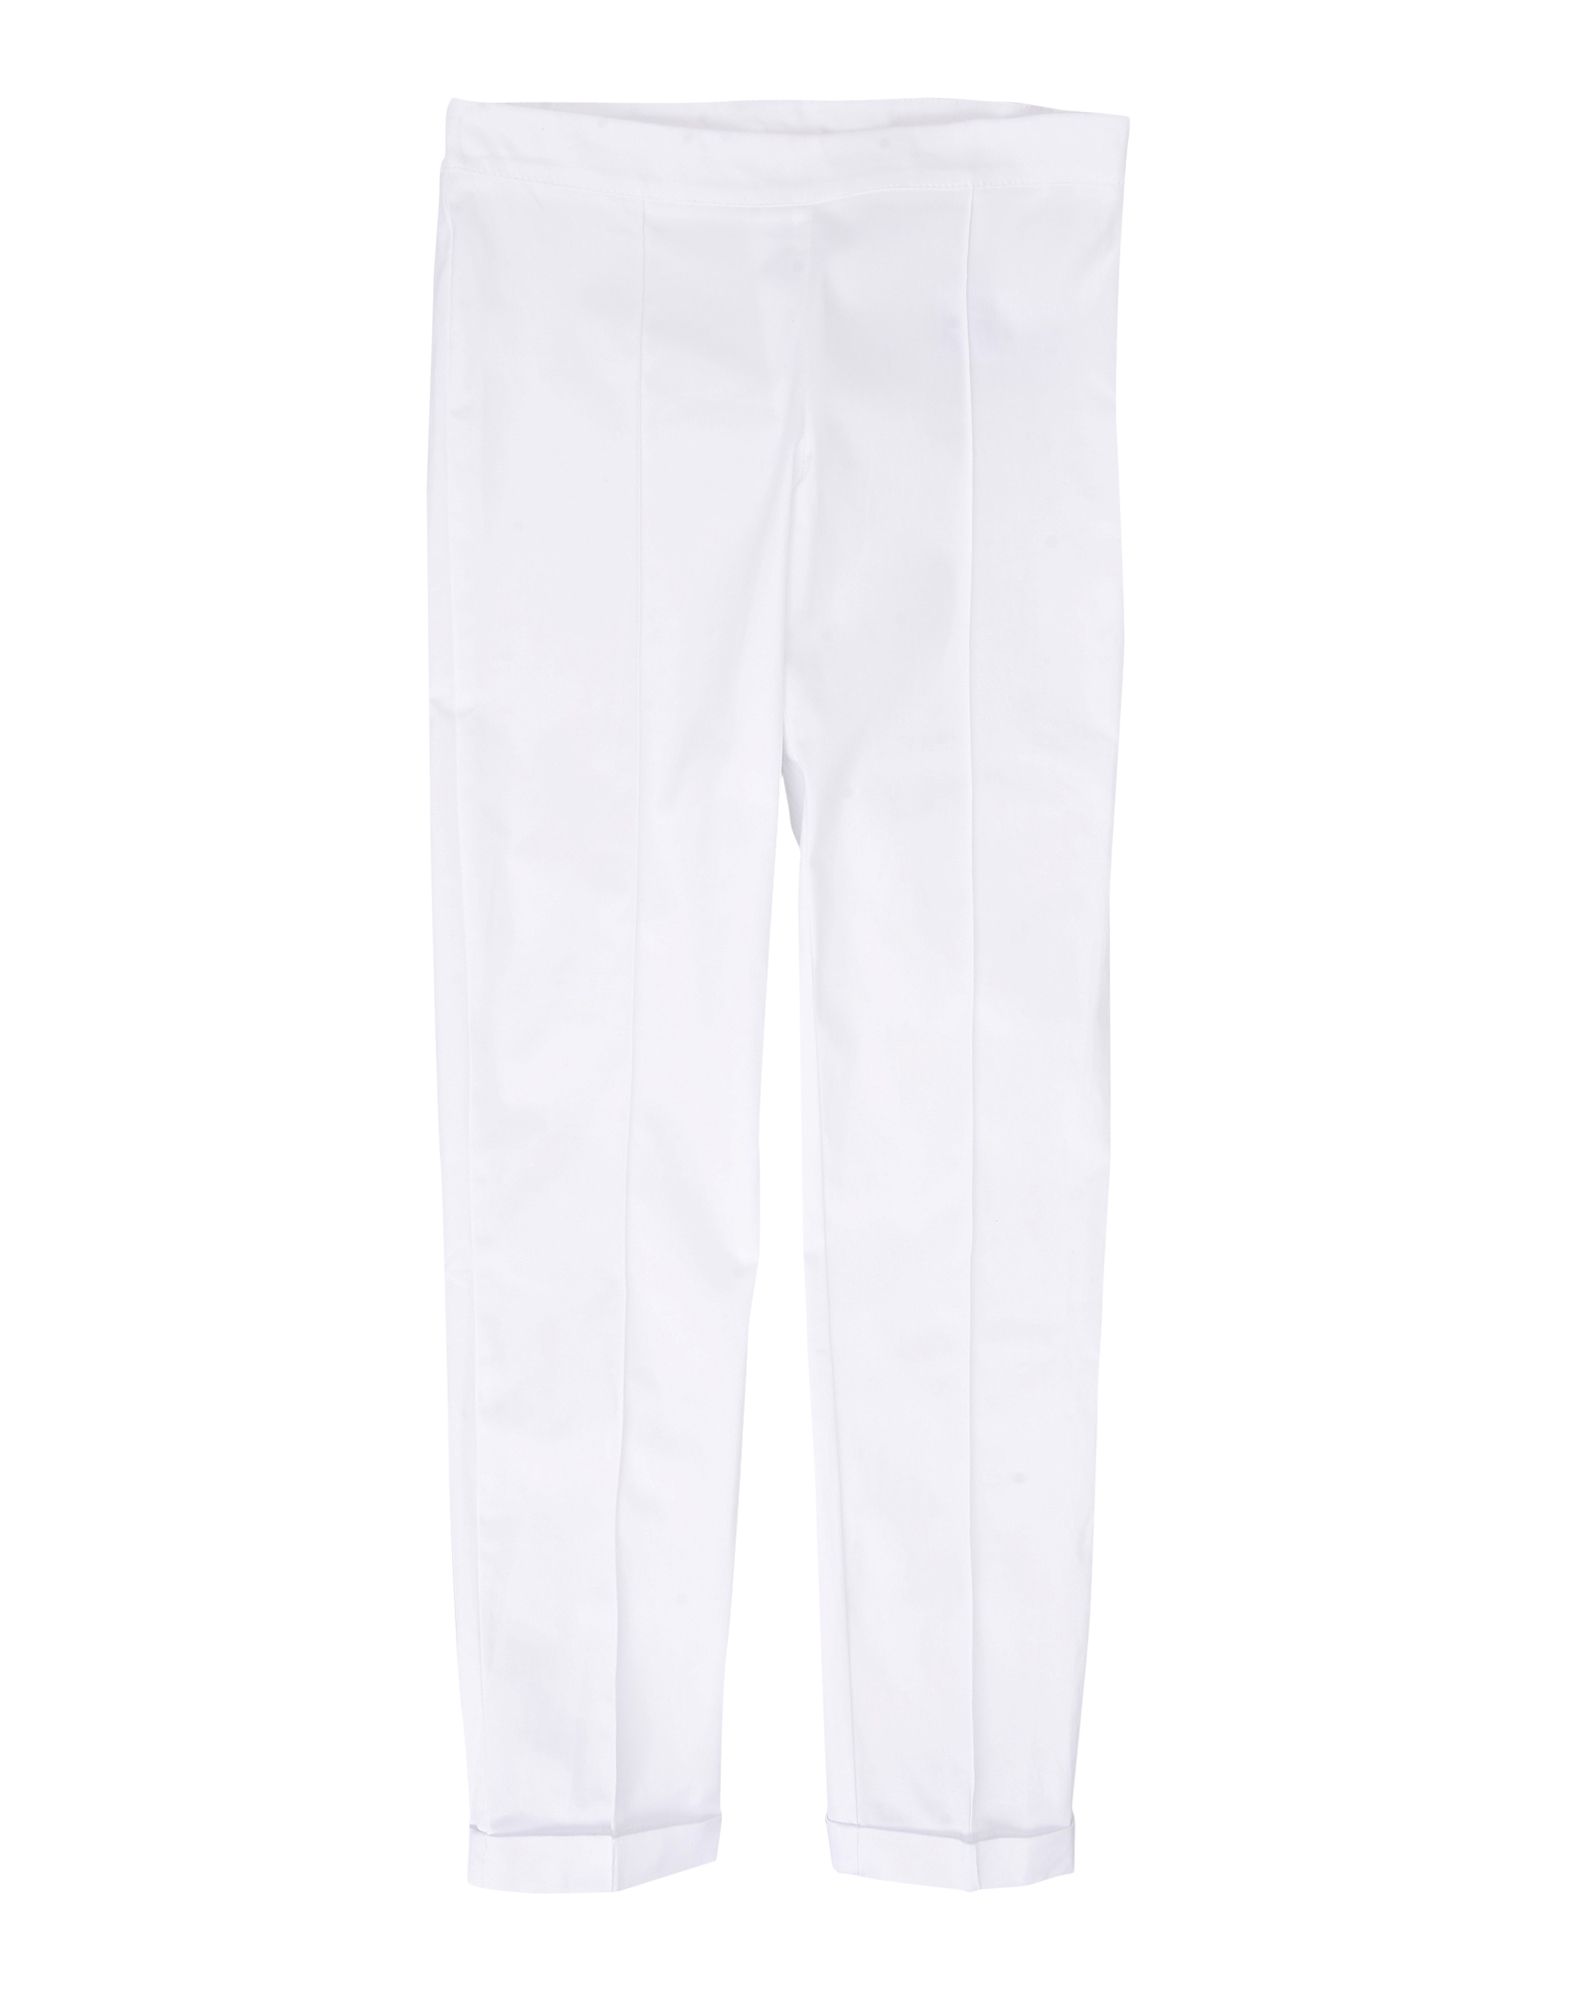 Повседневные брюки  - Бежевый,Белый цвет